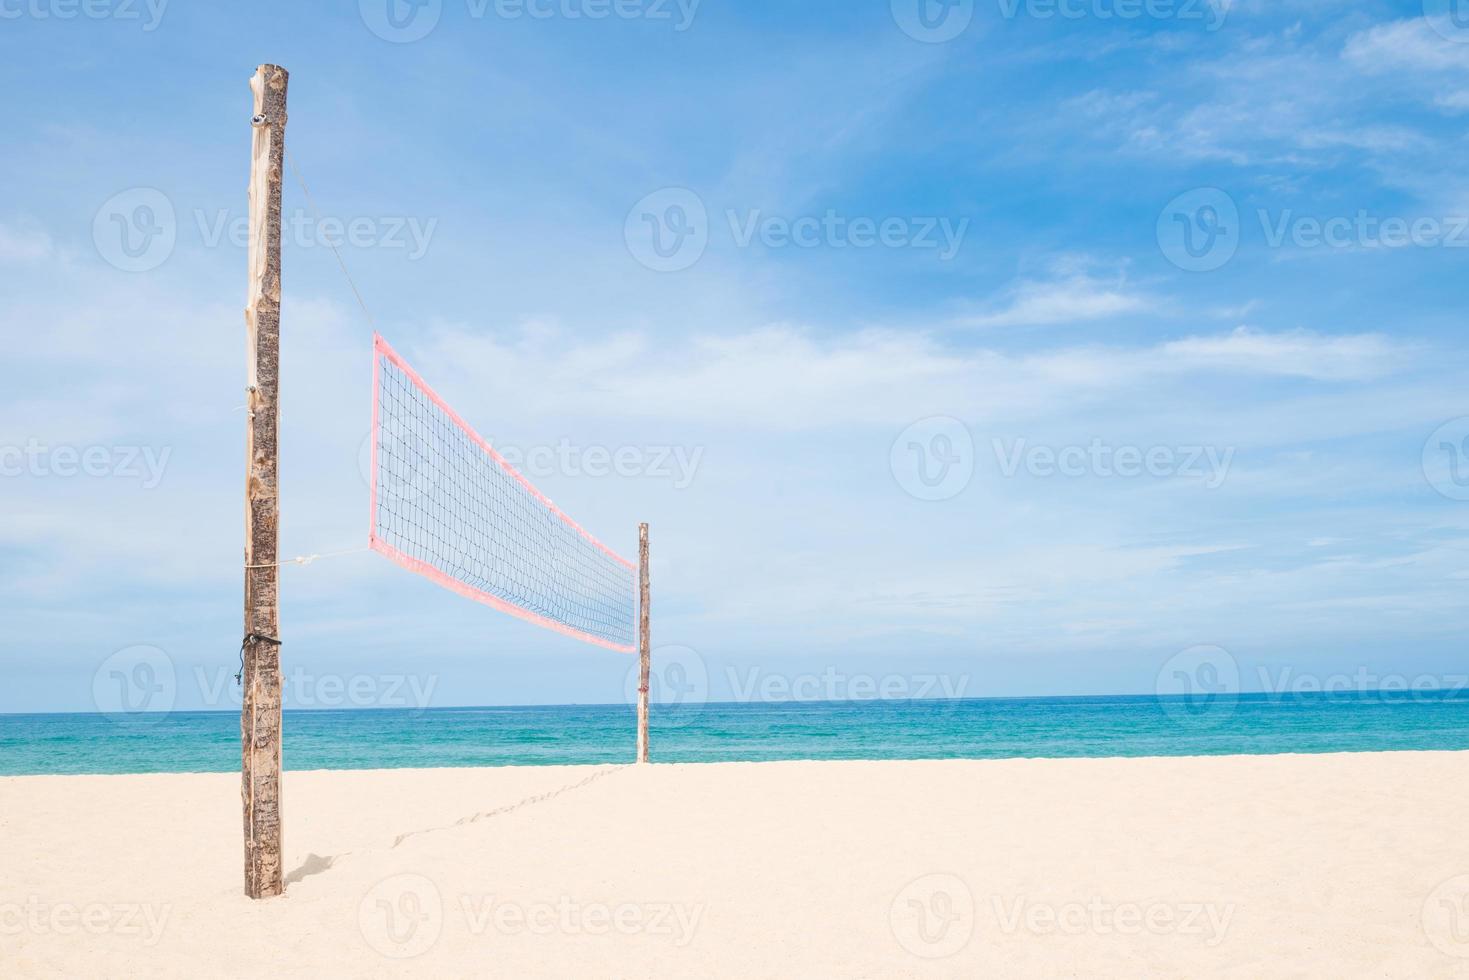 rede de vôlei na praia de areia vazia foto